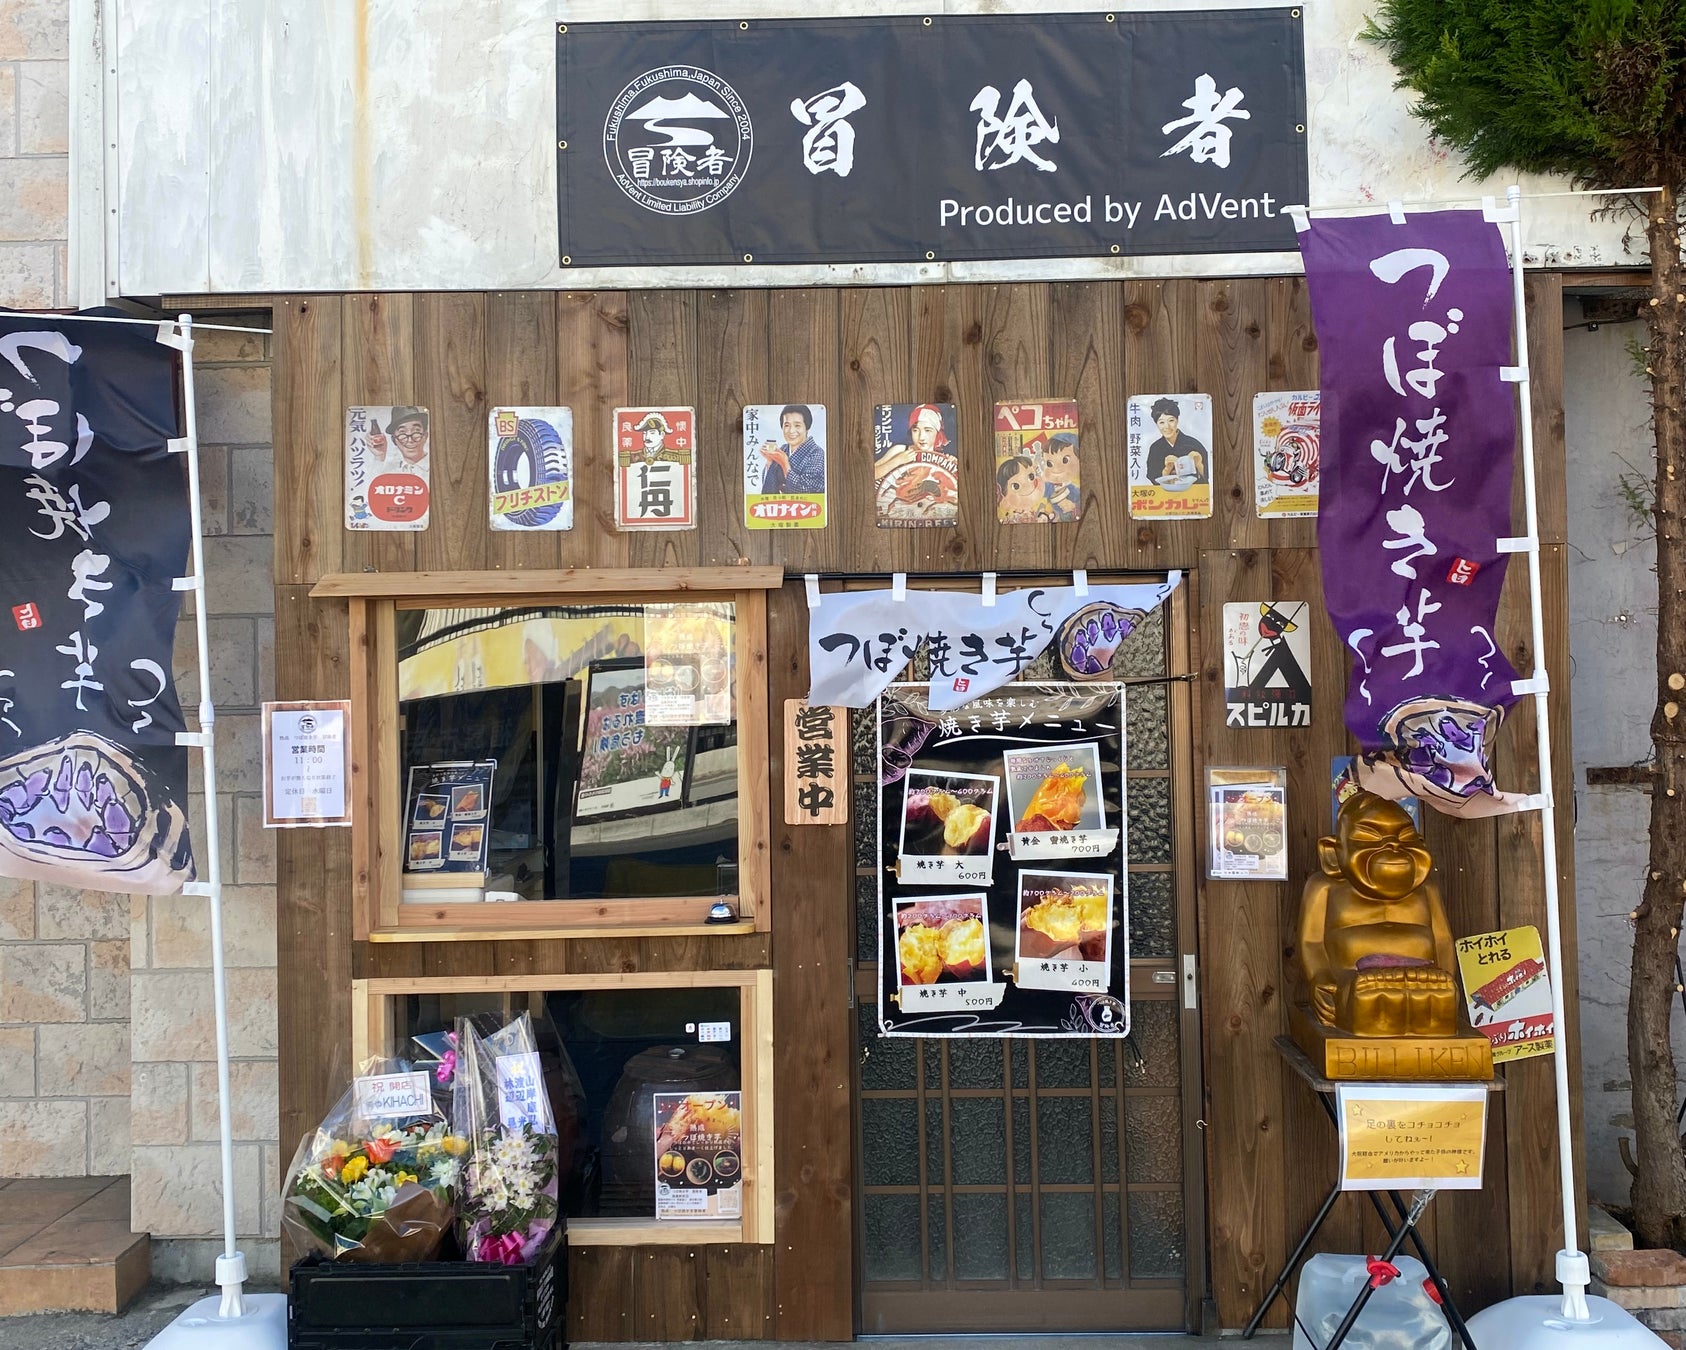 炭火で水蒸気調理ができる「炙り鉢」を使ったセルフ炭焼き居酒屋冒険者が７月２０日福島駅東口徒歩３分の場所にオープンいたします。